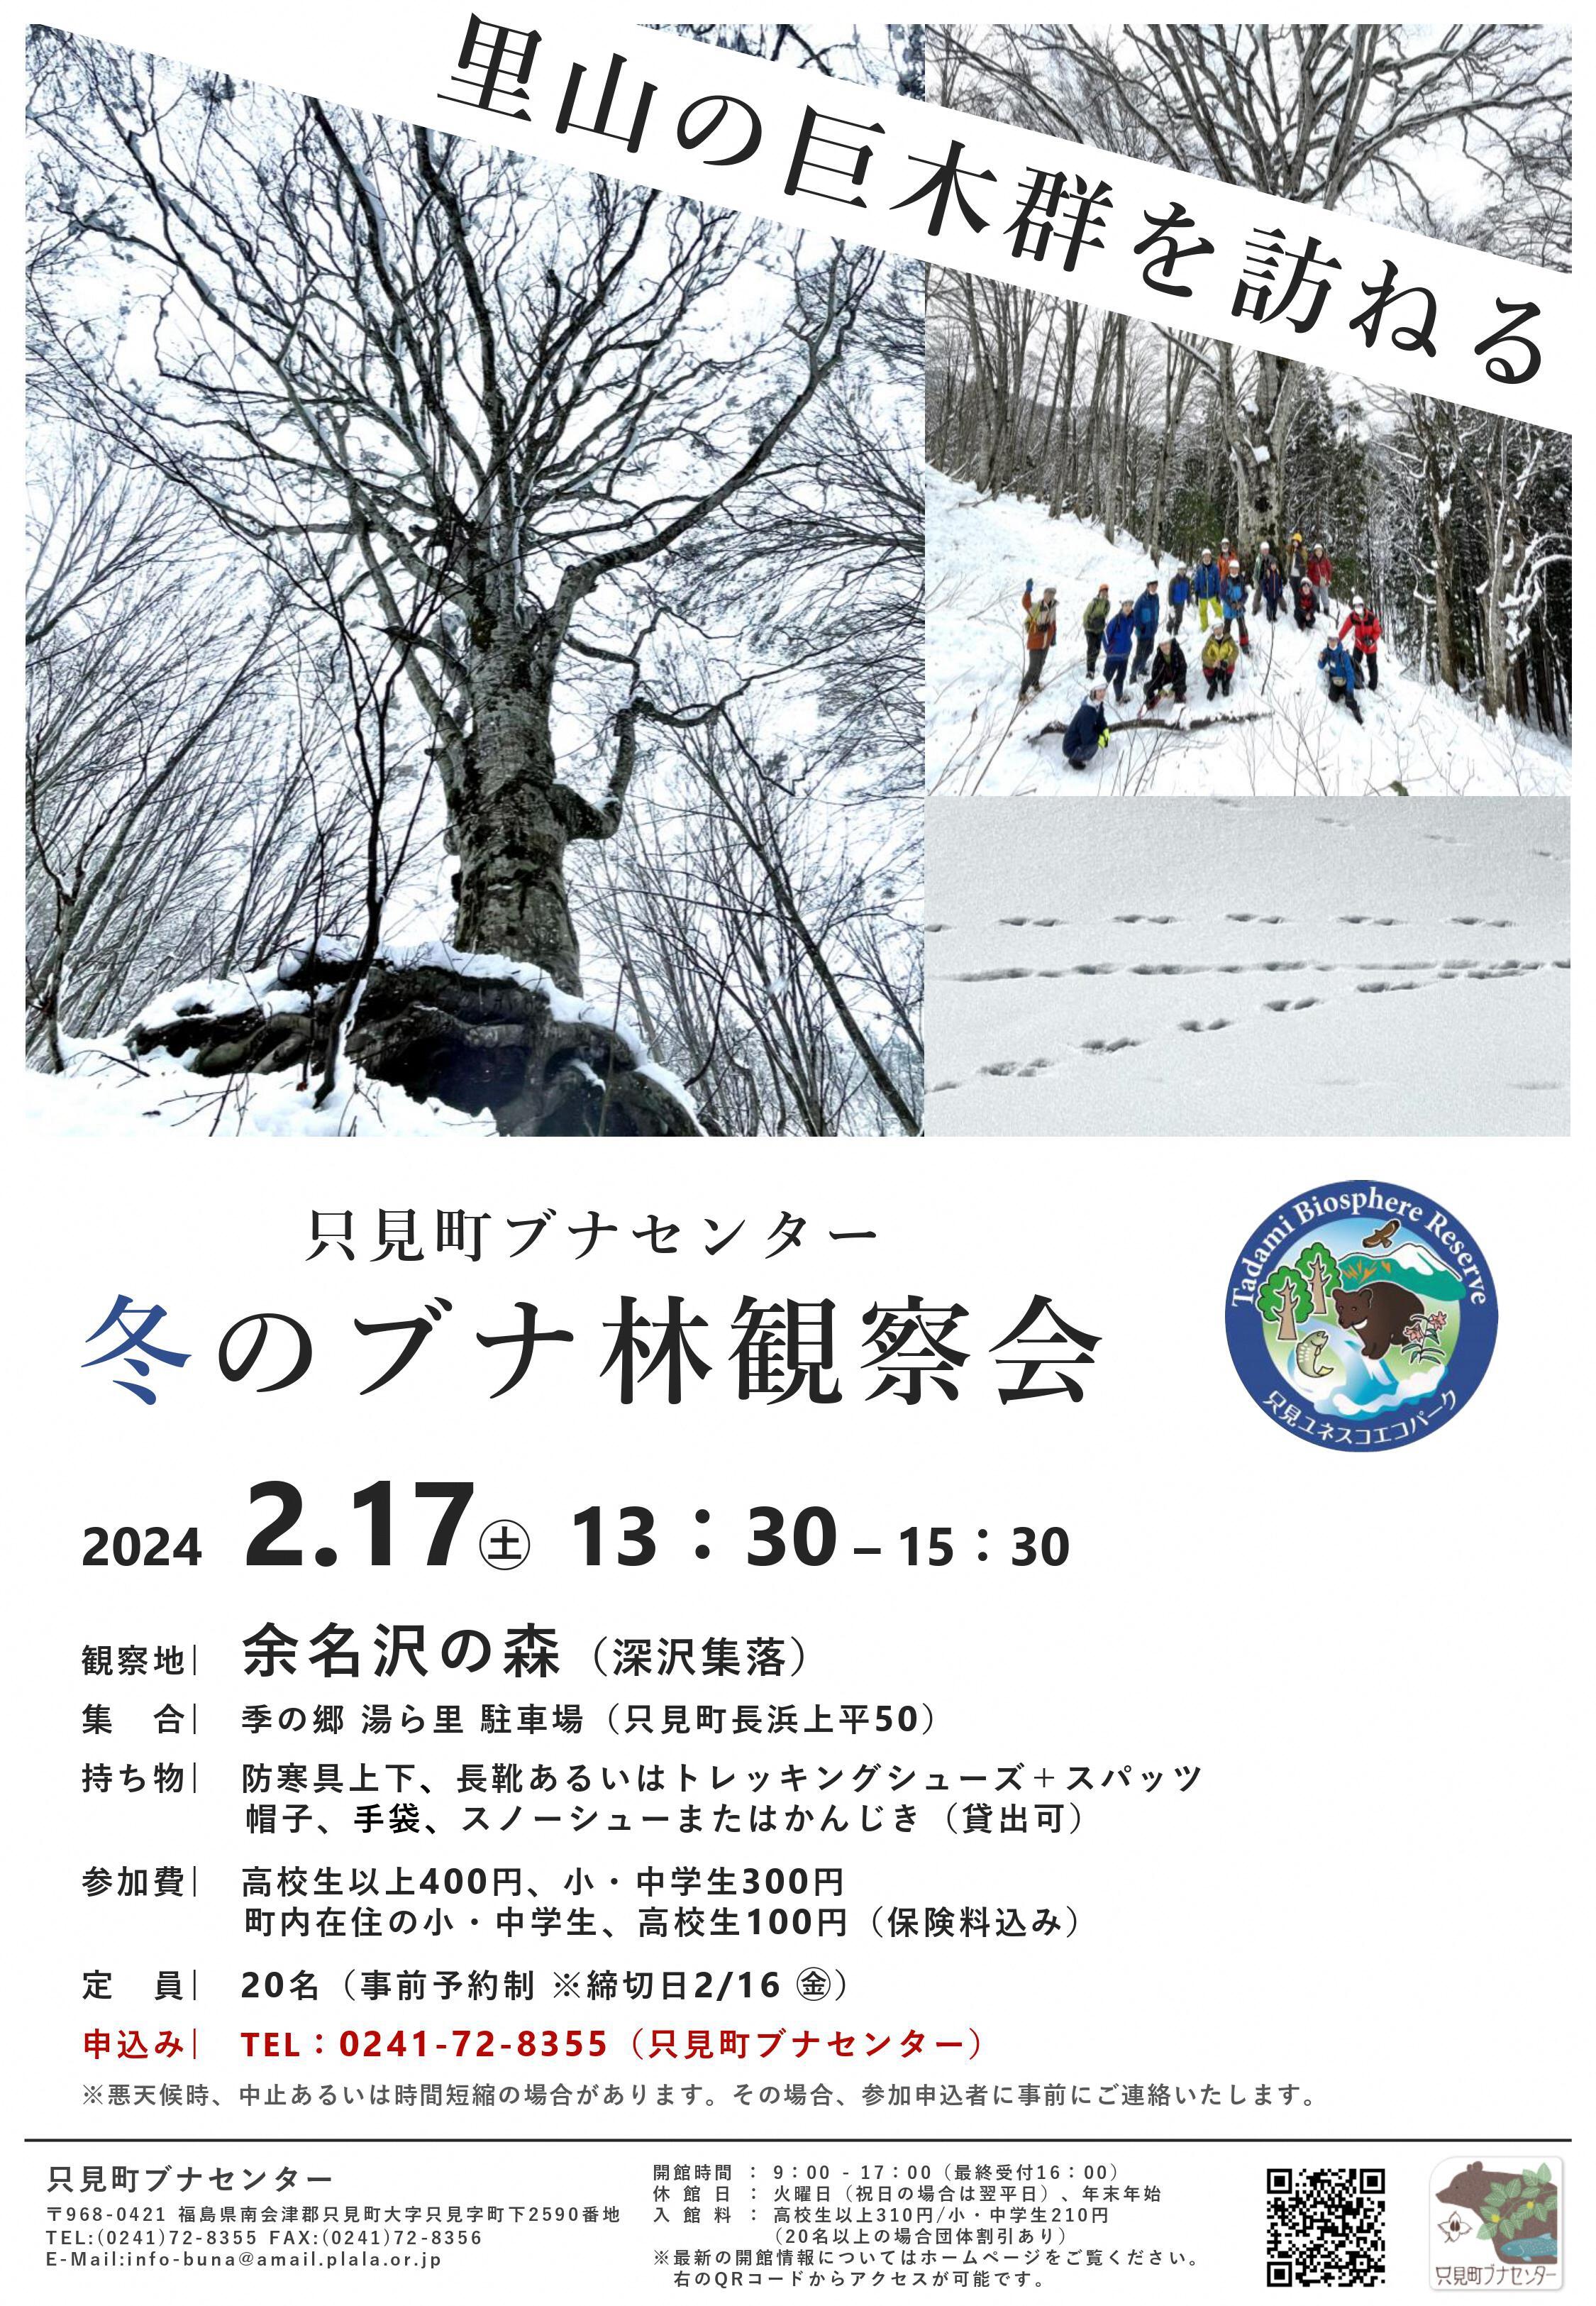 https://www.town.tadami.lg.jp/event/2024/02/06/f5f1abfbd0cf4c78e02a358f9b136029.jpg